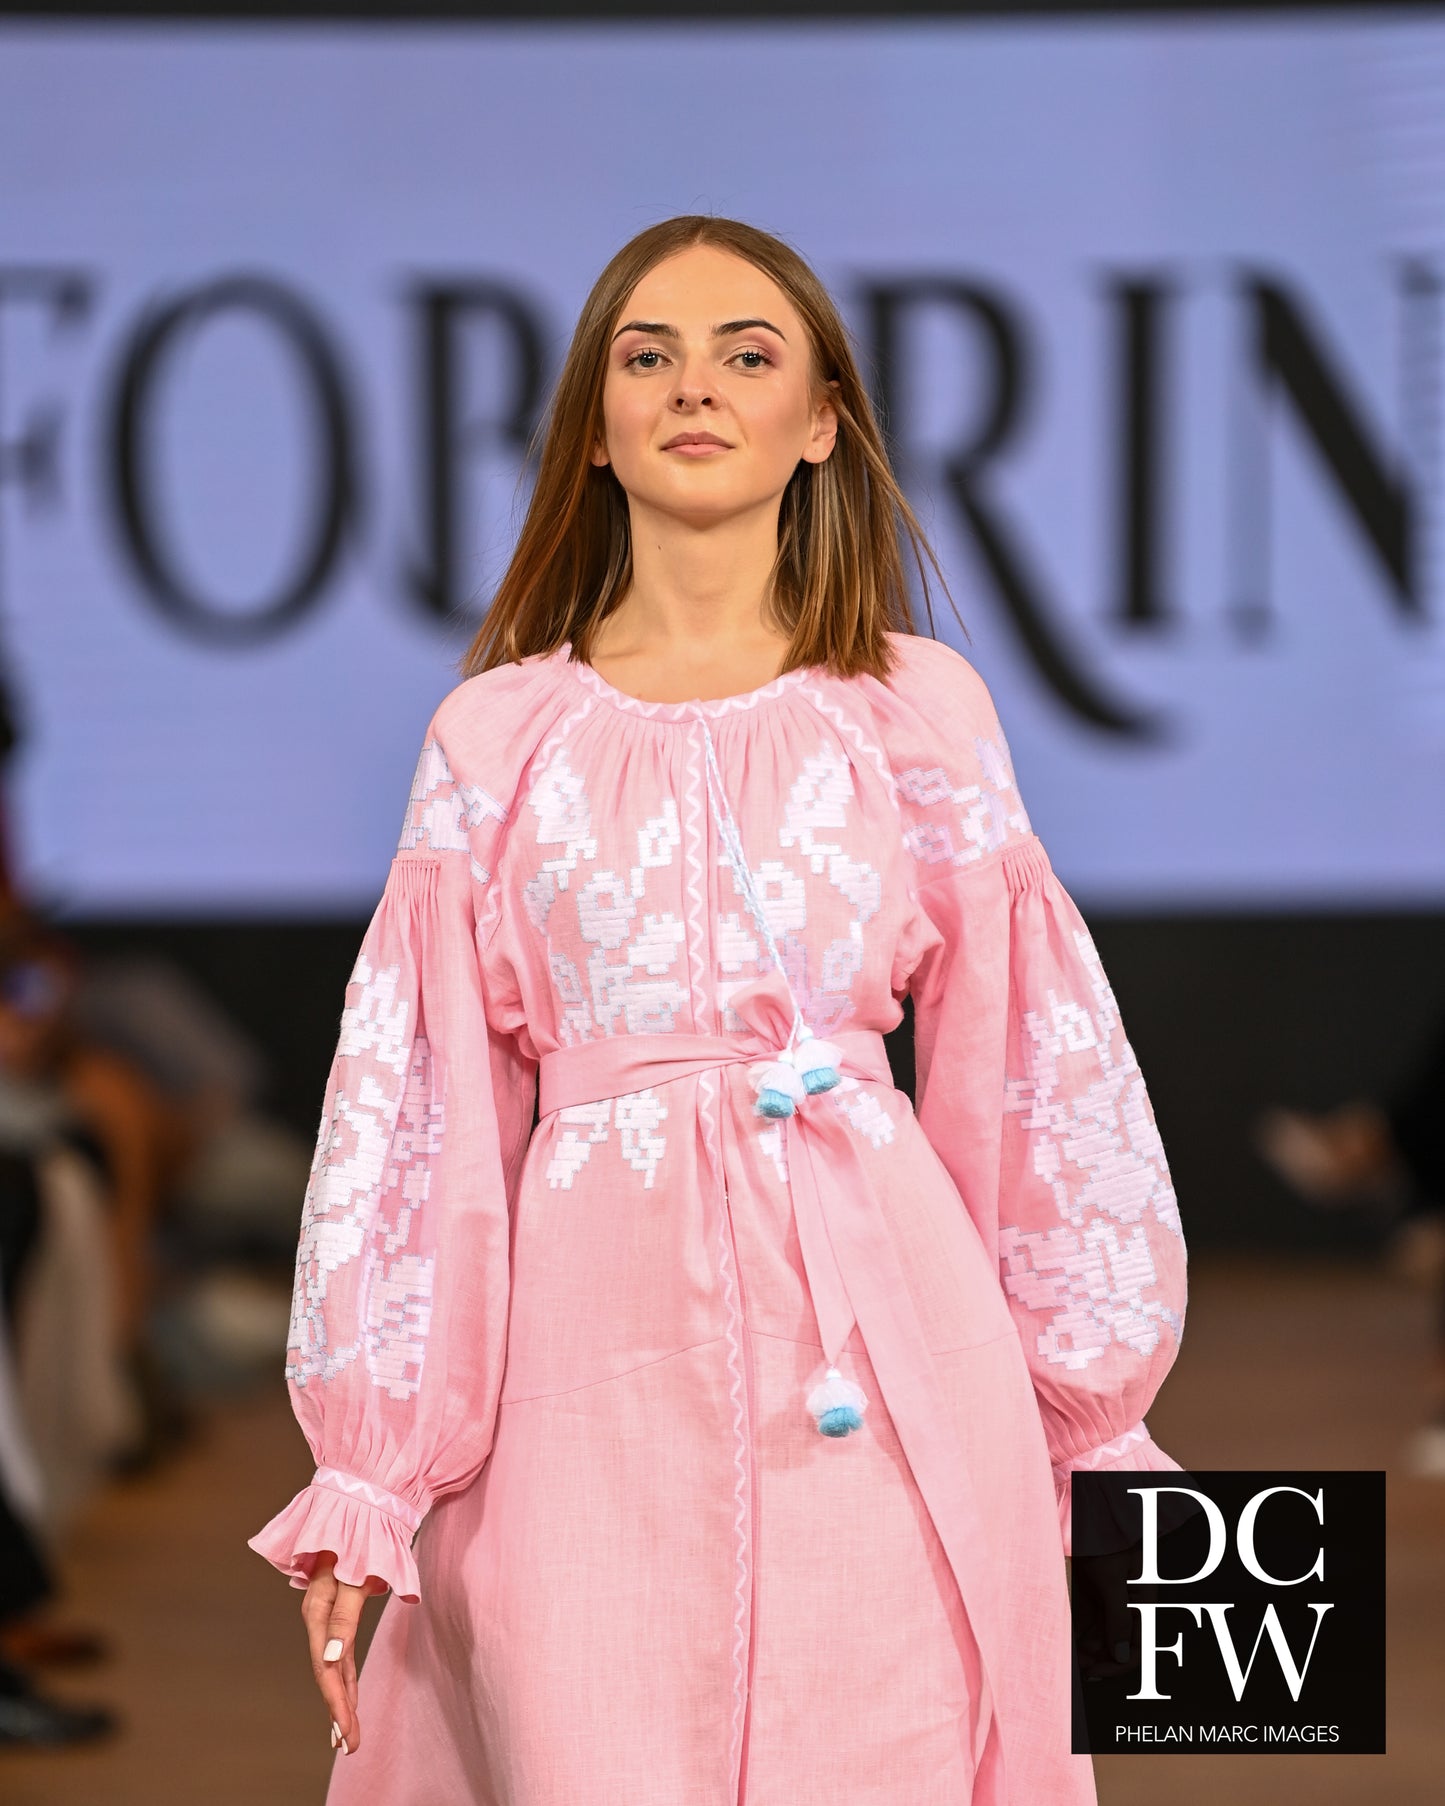 Zarina Pink Midi Dress FOBERINI